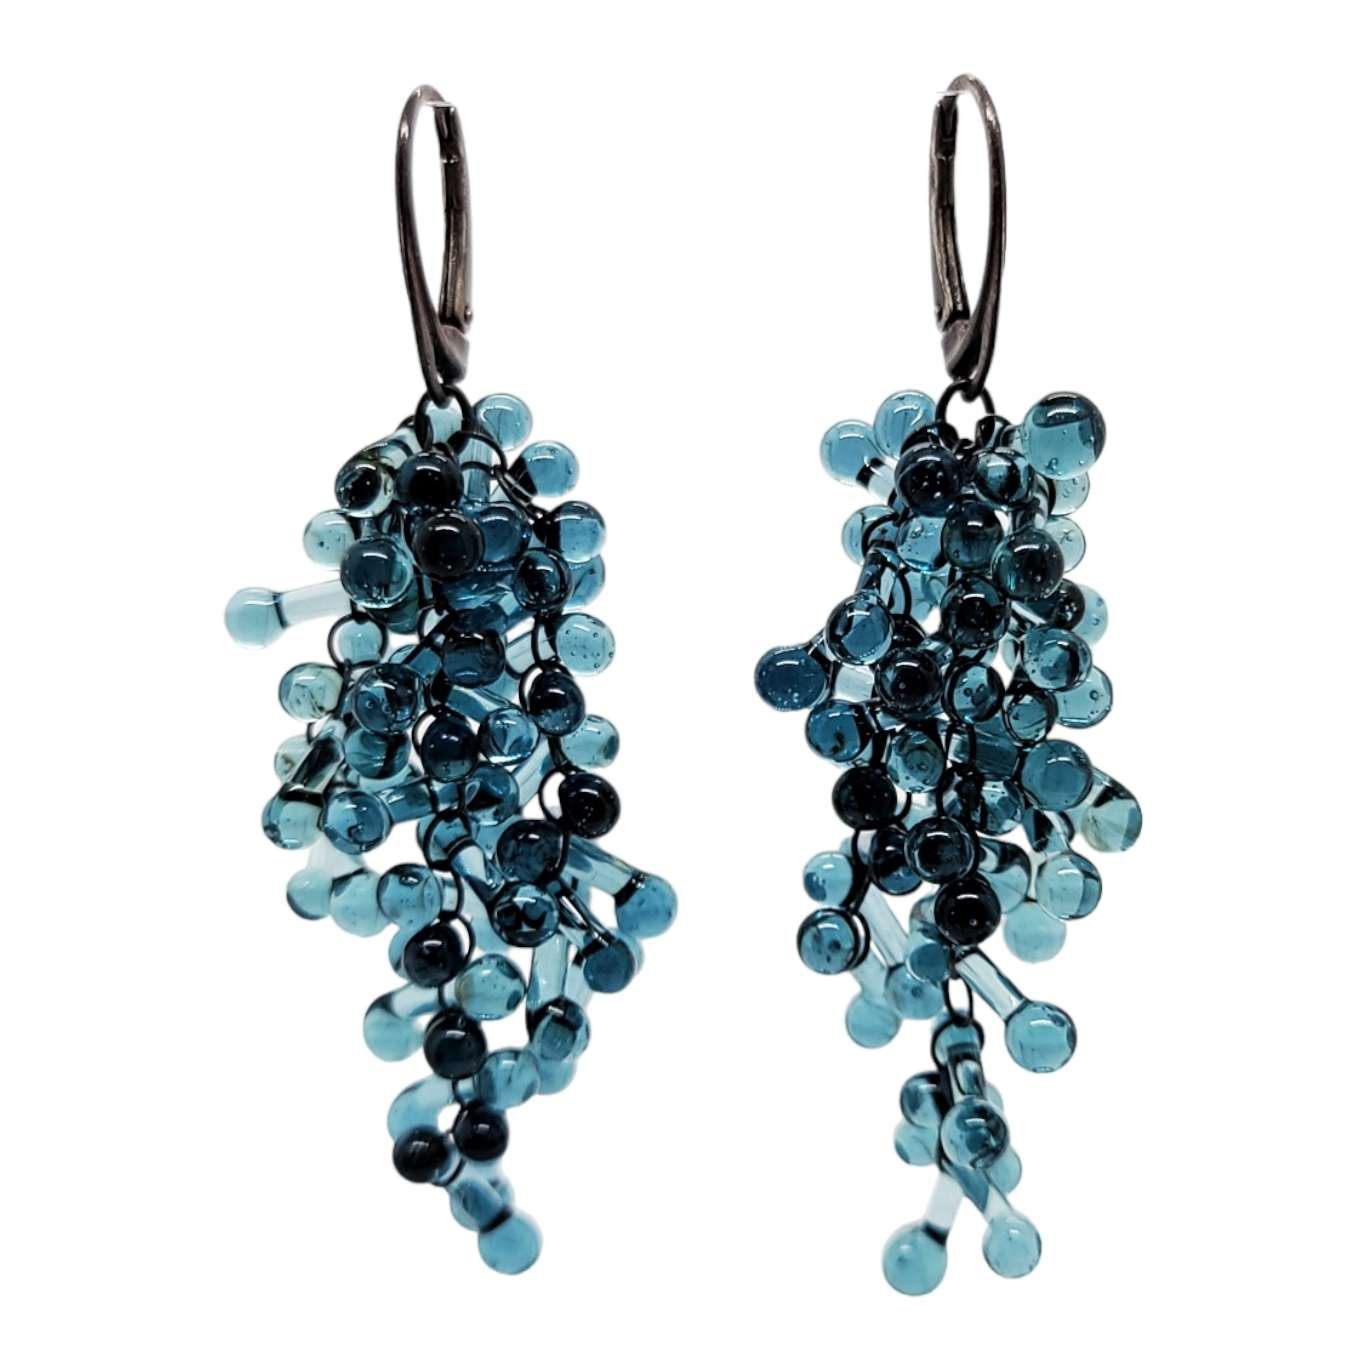 Earrings - Long Rosetti Grape Clusters in Slate Blue by Krista Bermeo Studio